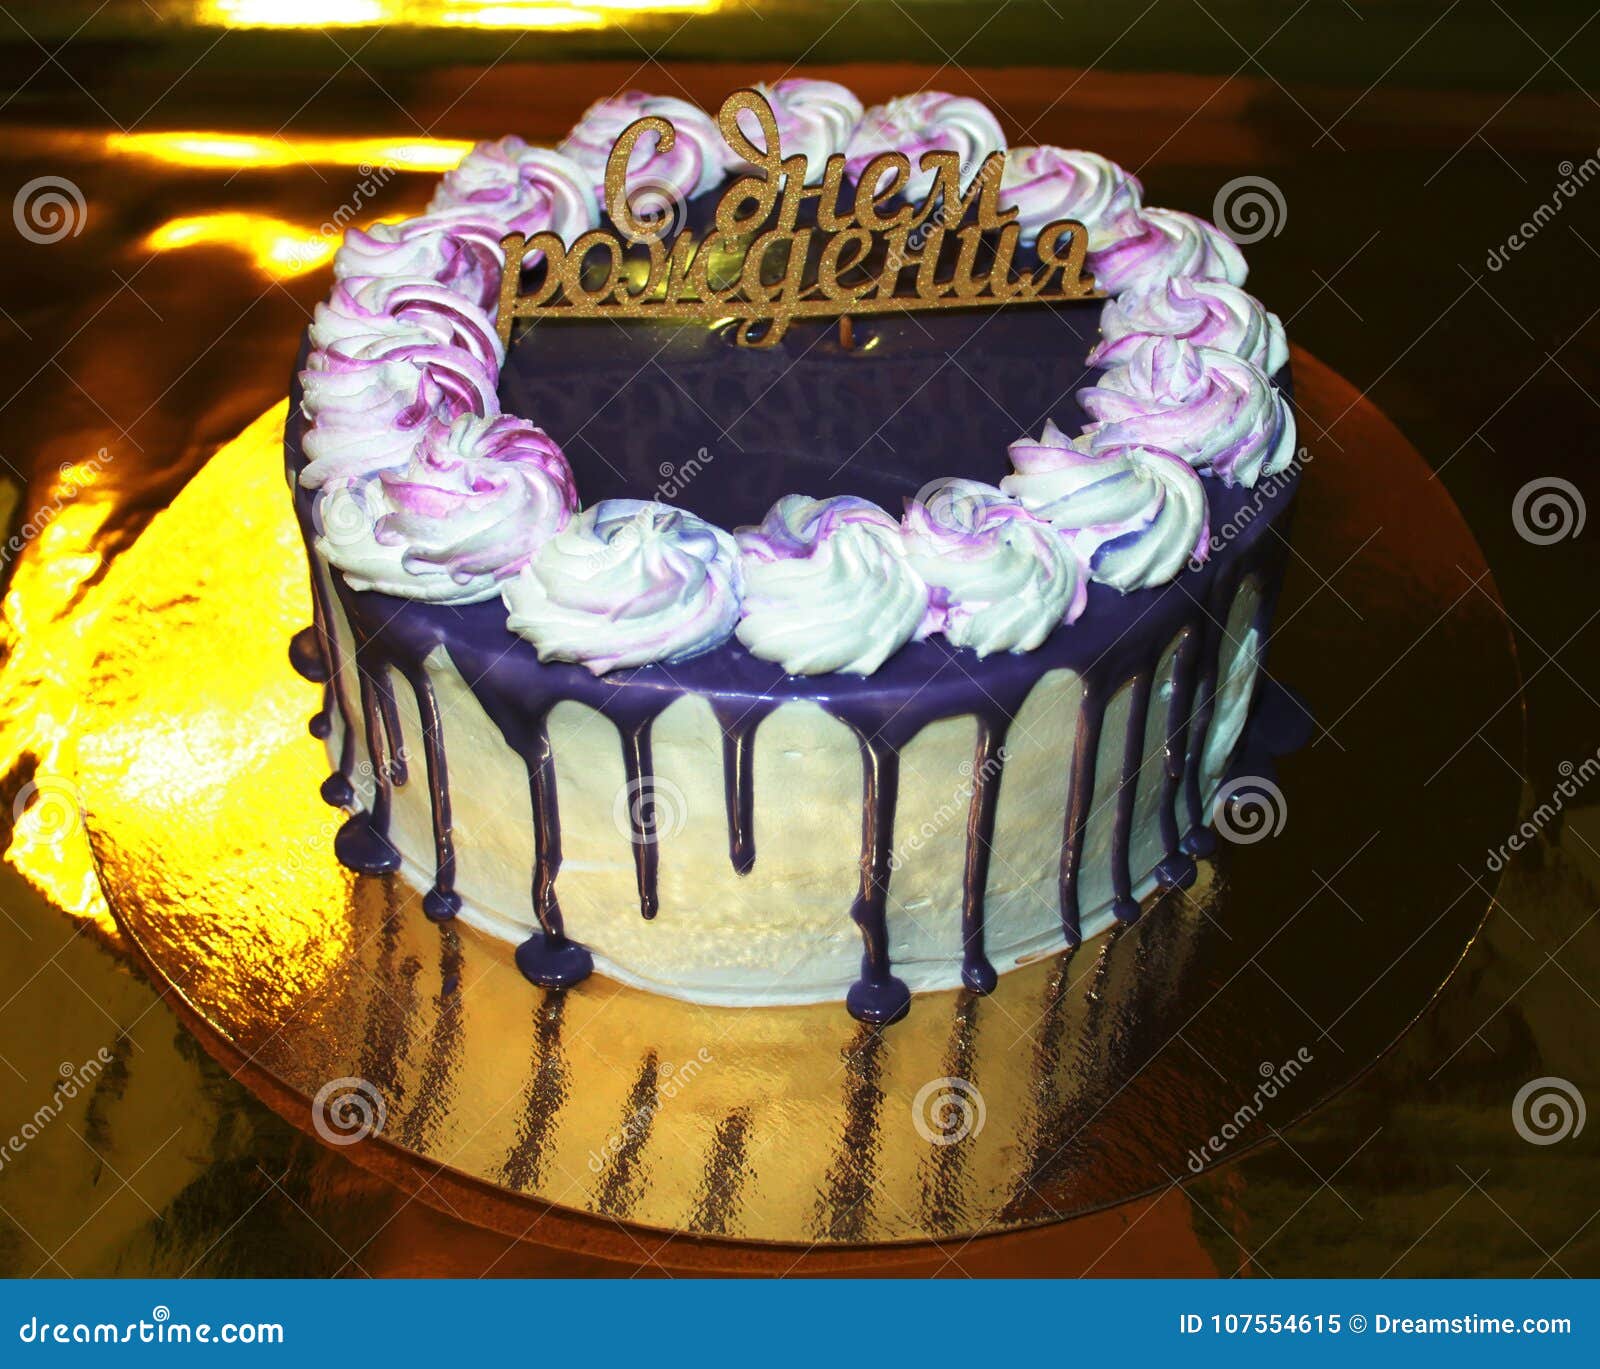 Foto av kakan på en guld- substrate med en guld- bakgrund, lycklig födelsedag. Festlig födelsedagkaka med strimmor av choklad, en violett färg, med den lyckliga födelsedagen för inskrift